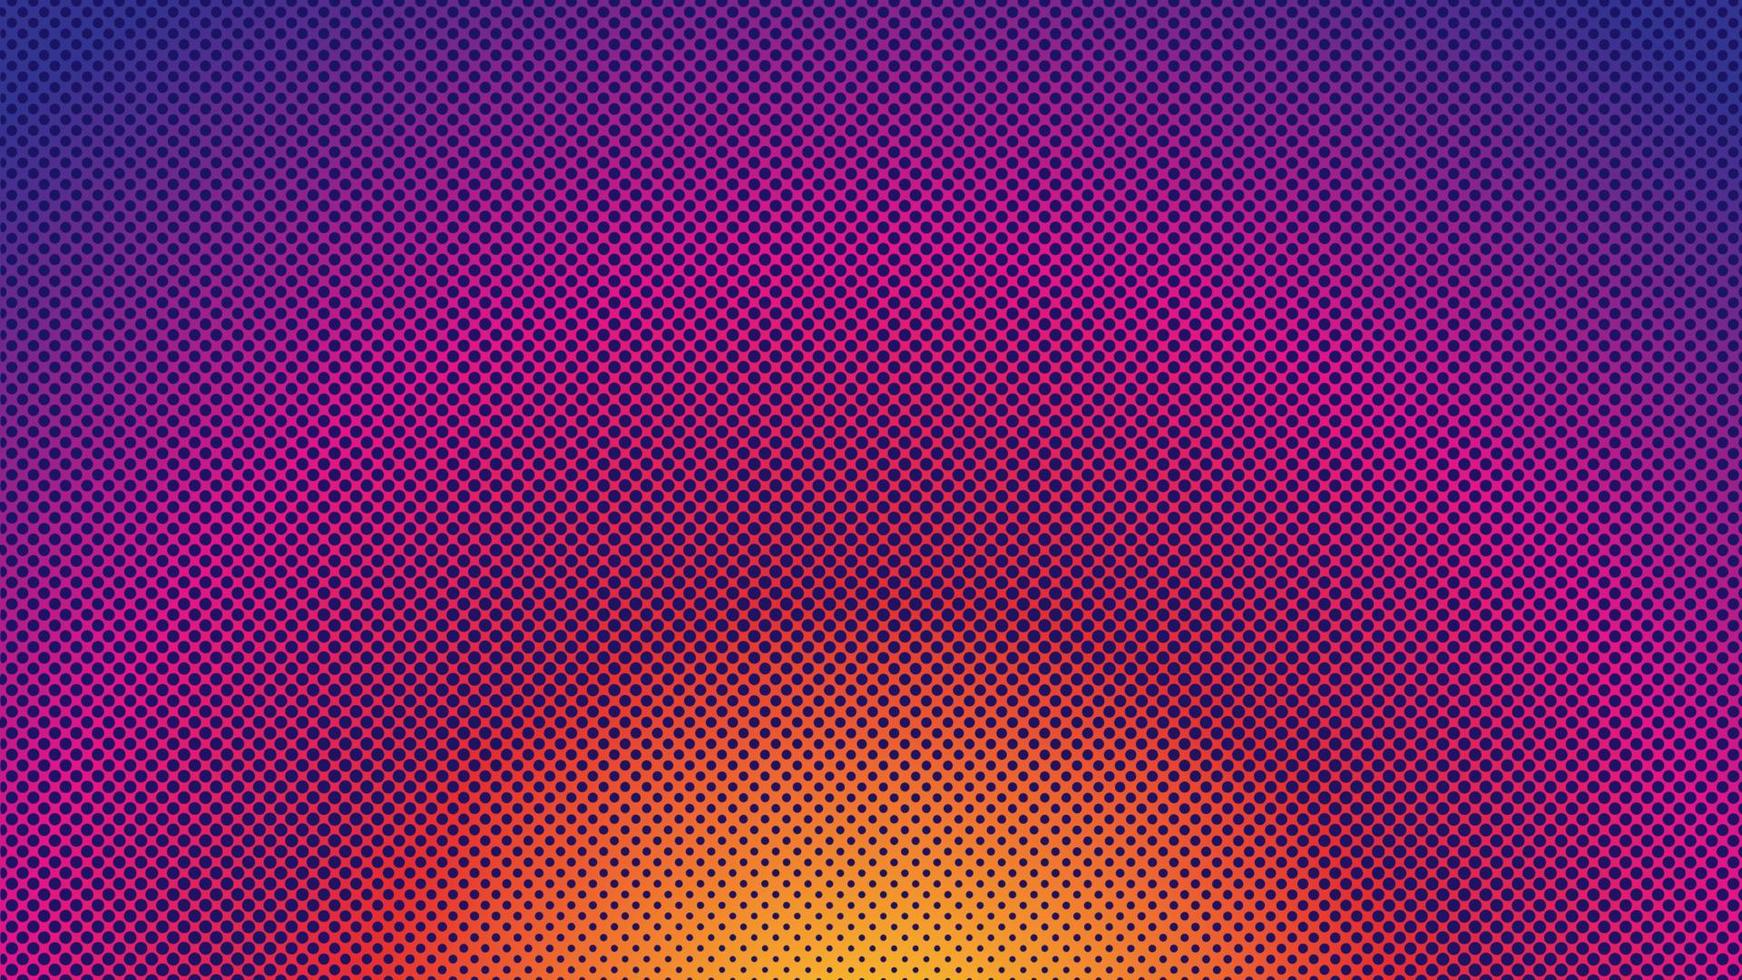 kleurrijke halftone achtergrond ontwerpsjabloon, popart, abstracte stippen patroon illustratie, moderne textuur element, radiale kleur voor de kleurovergang, oranje magenta violet paars gradatie behang vector